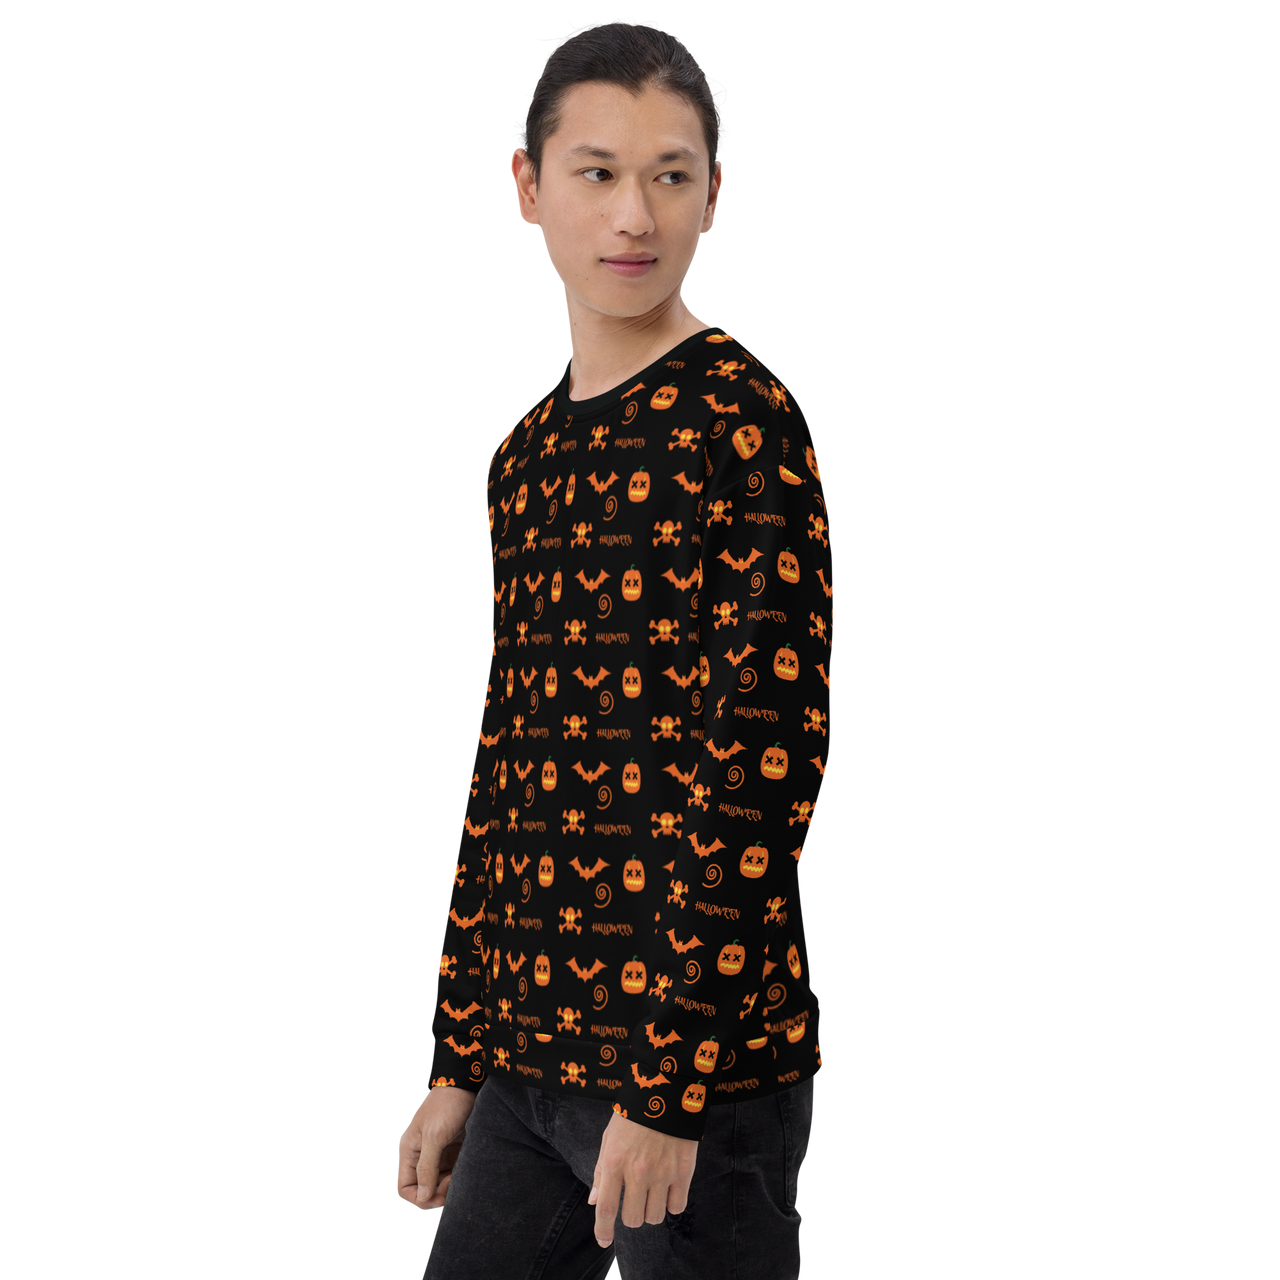 All over Unisex Halloween Sweater - Funny Halloween Sweatshirts - Unisex Halloween Sweatshirt For Halloween/Halloween Pattern SHAVA